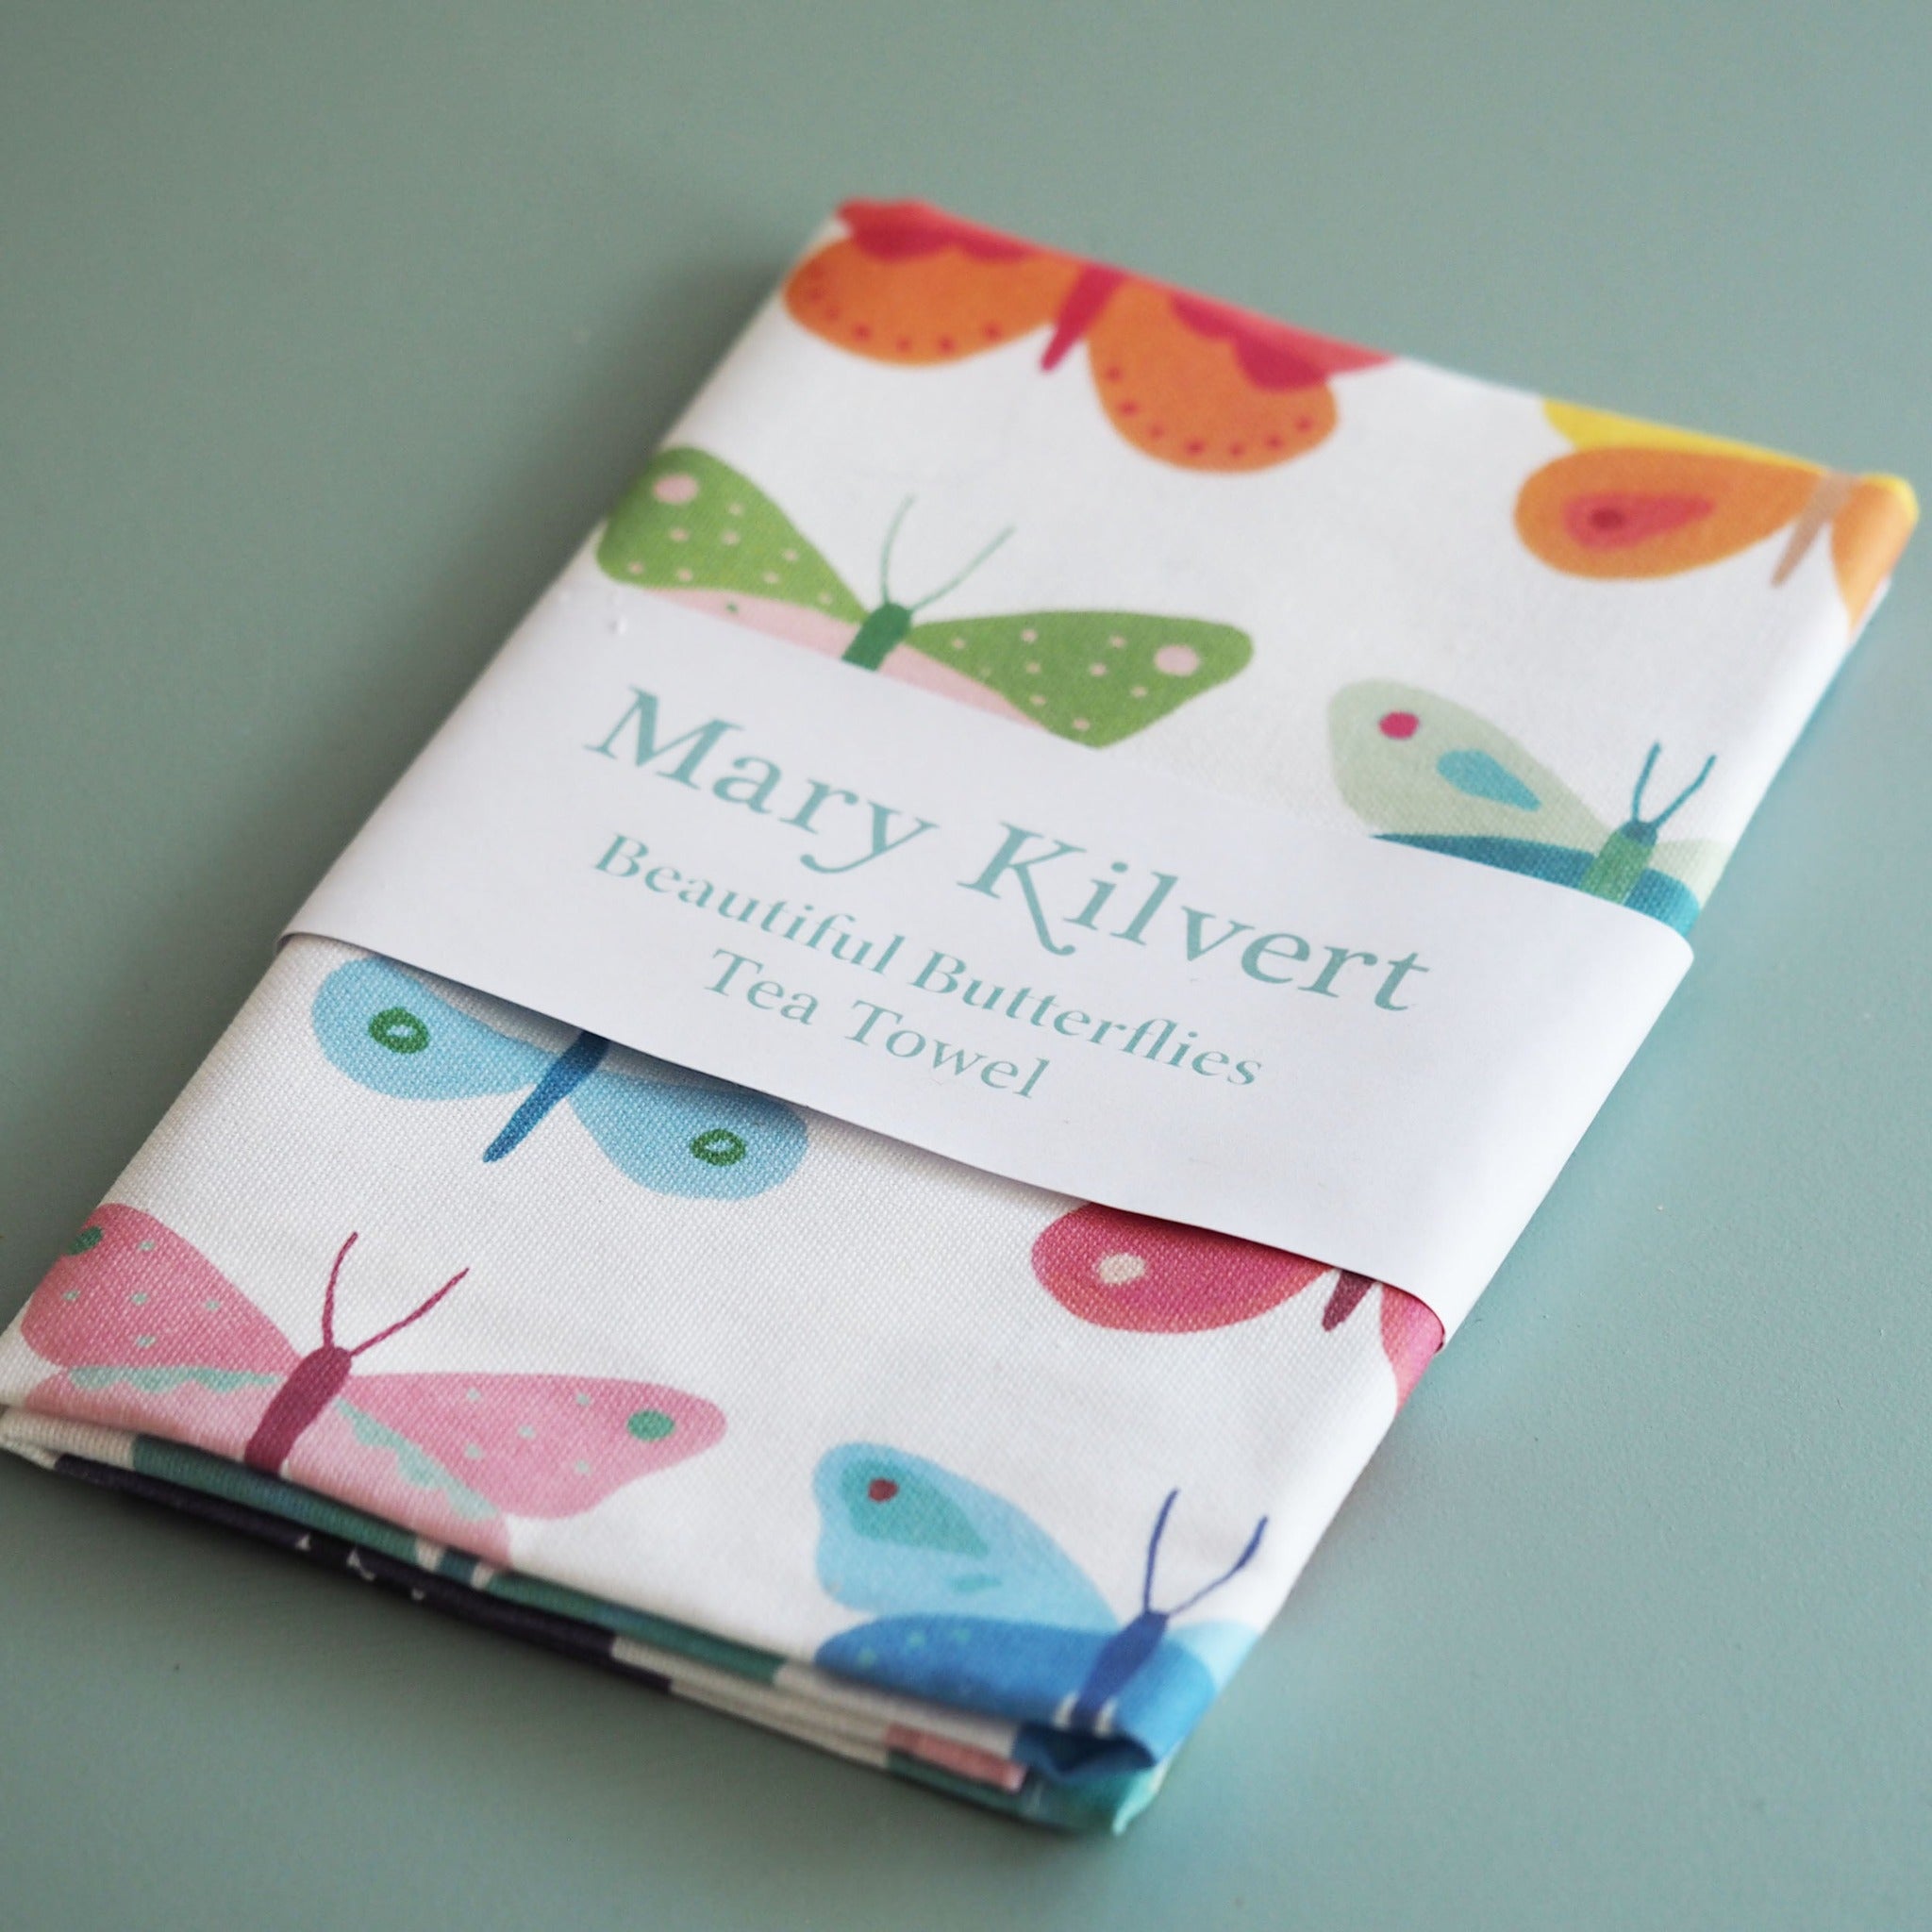 Butterfly Tea Towel by Mary Kilvert